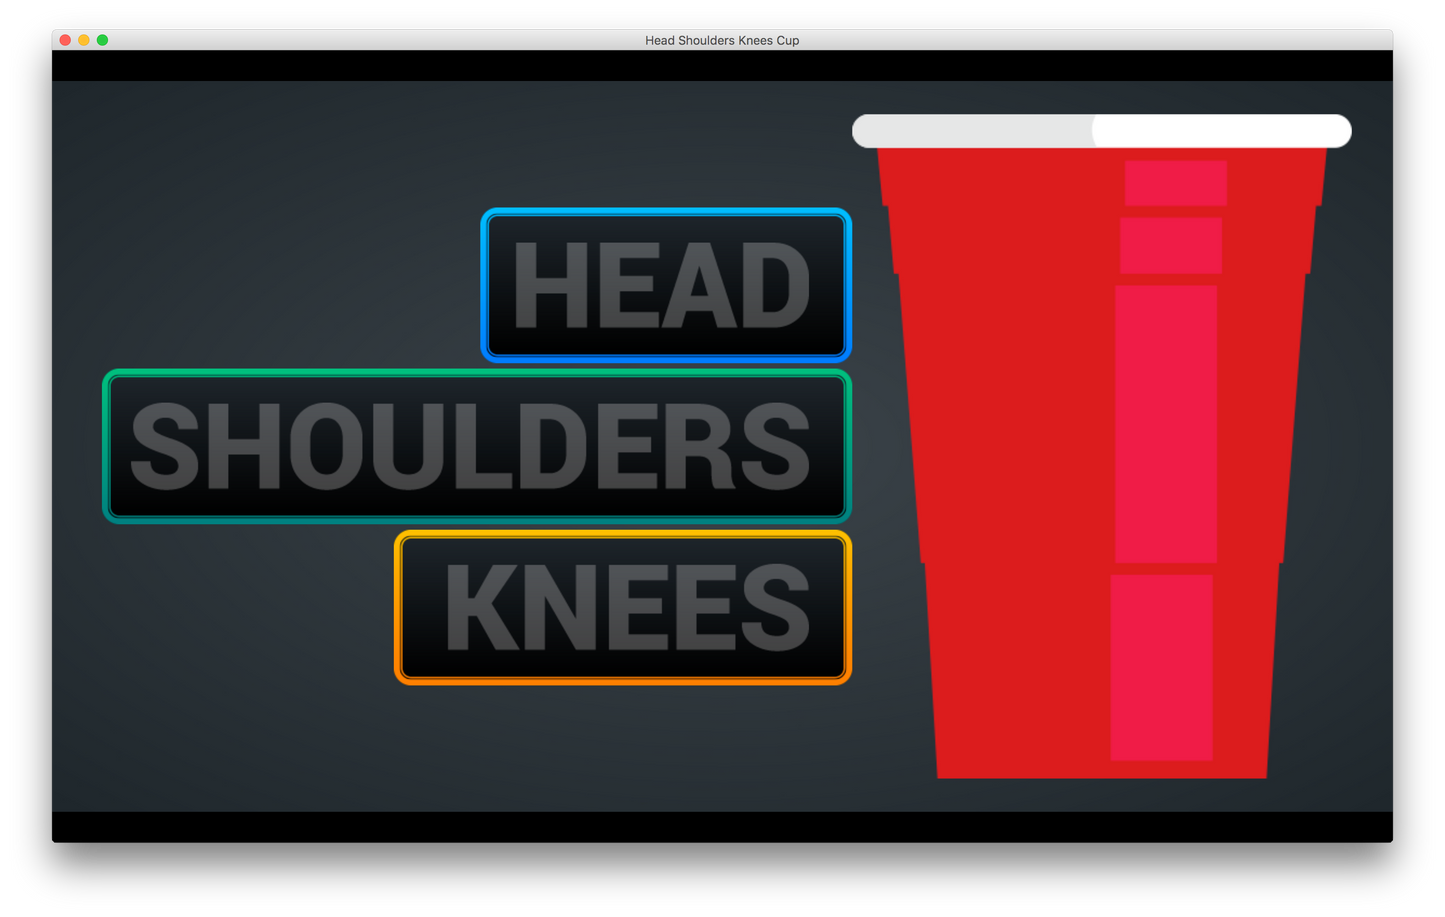 Head Shoulders Knees & Cup